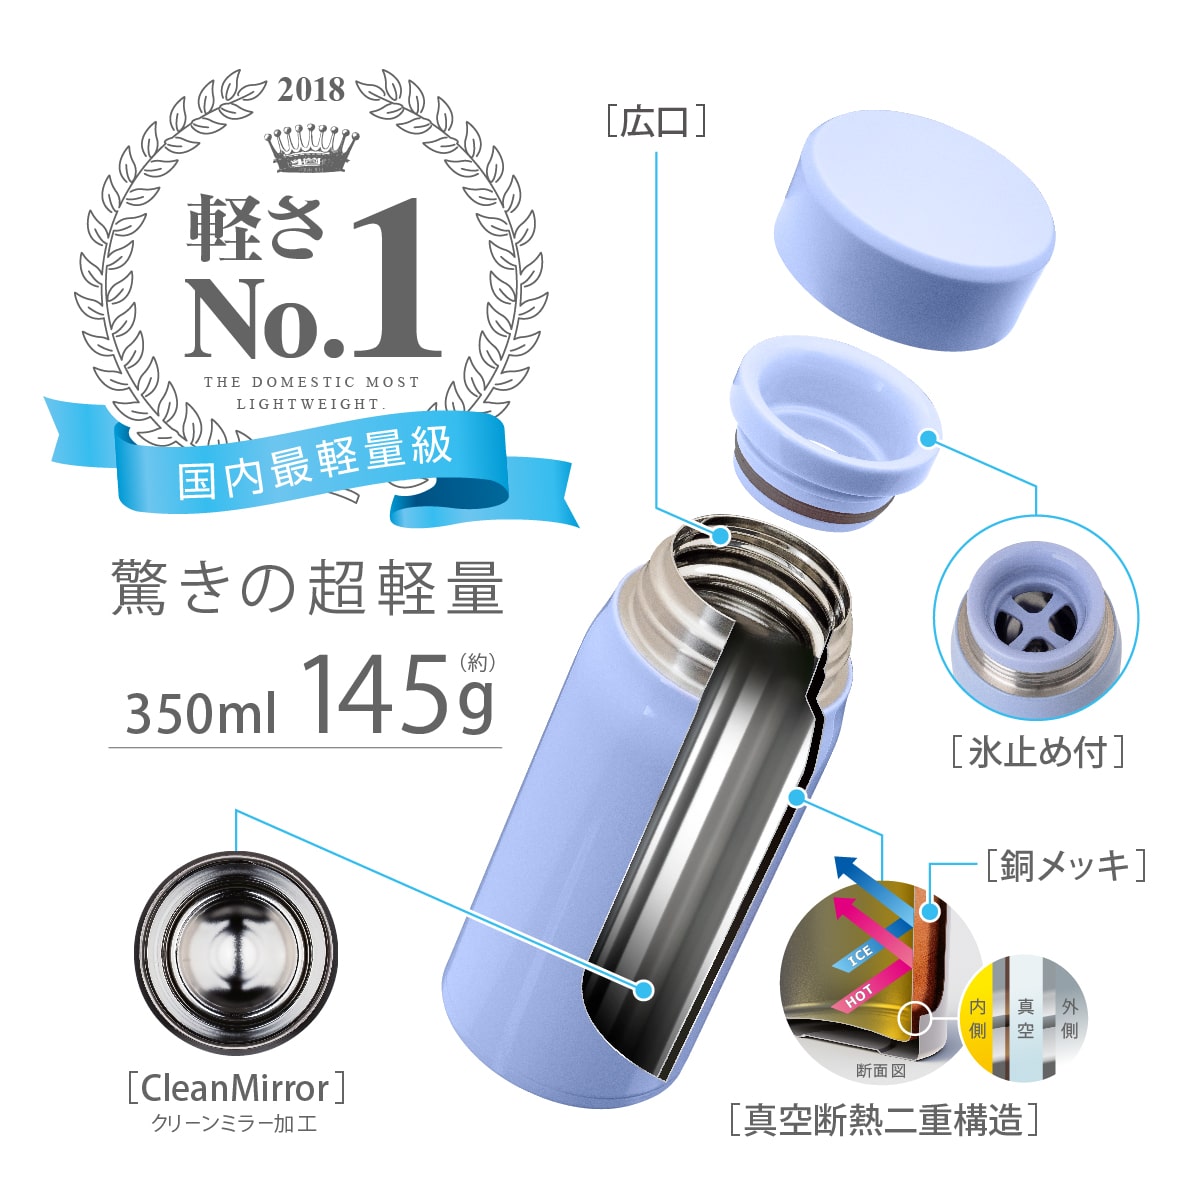 【美品】gram/17.0/corei7/1T/16M/超軽量1,350g